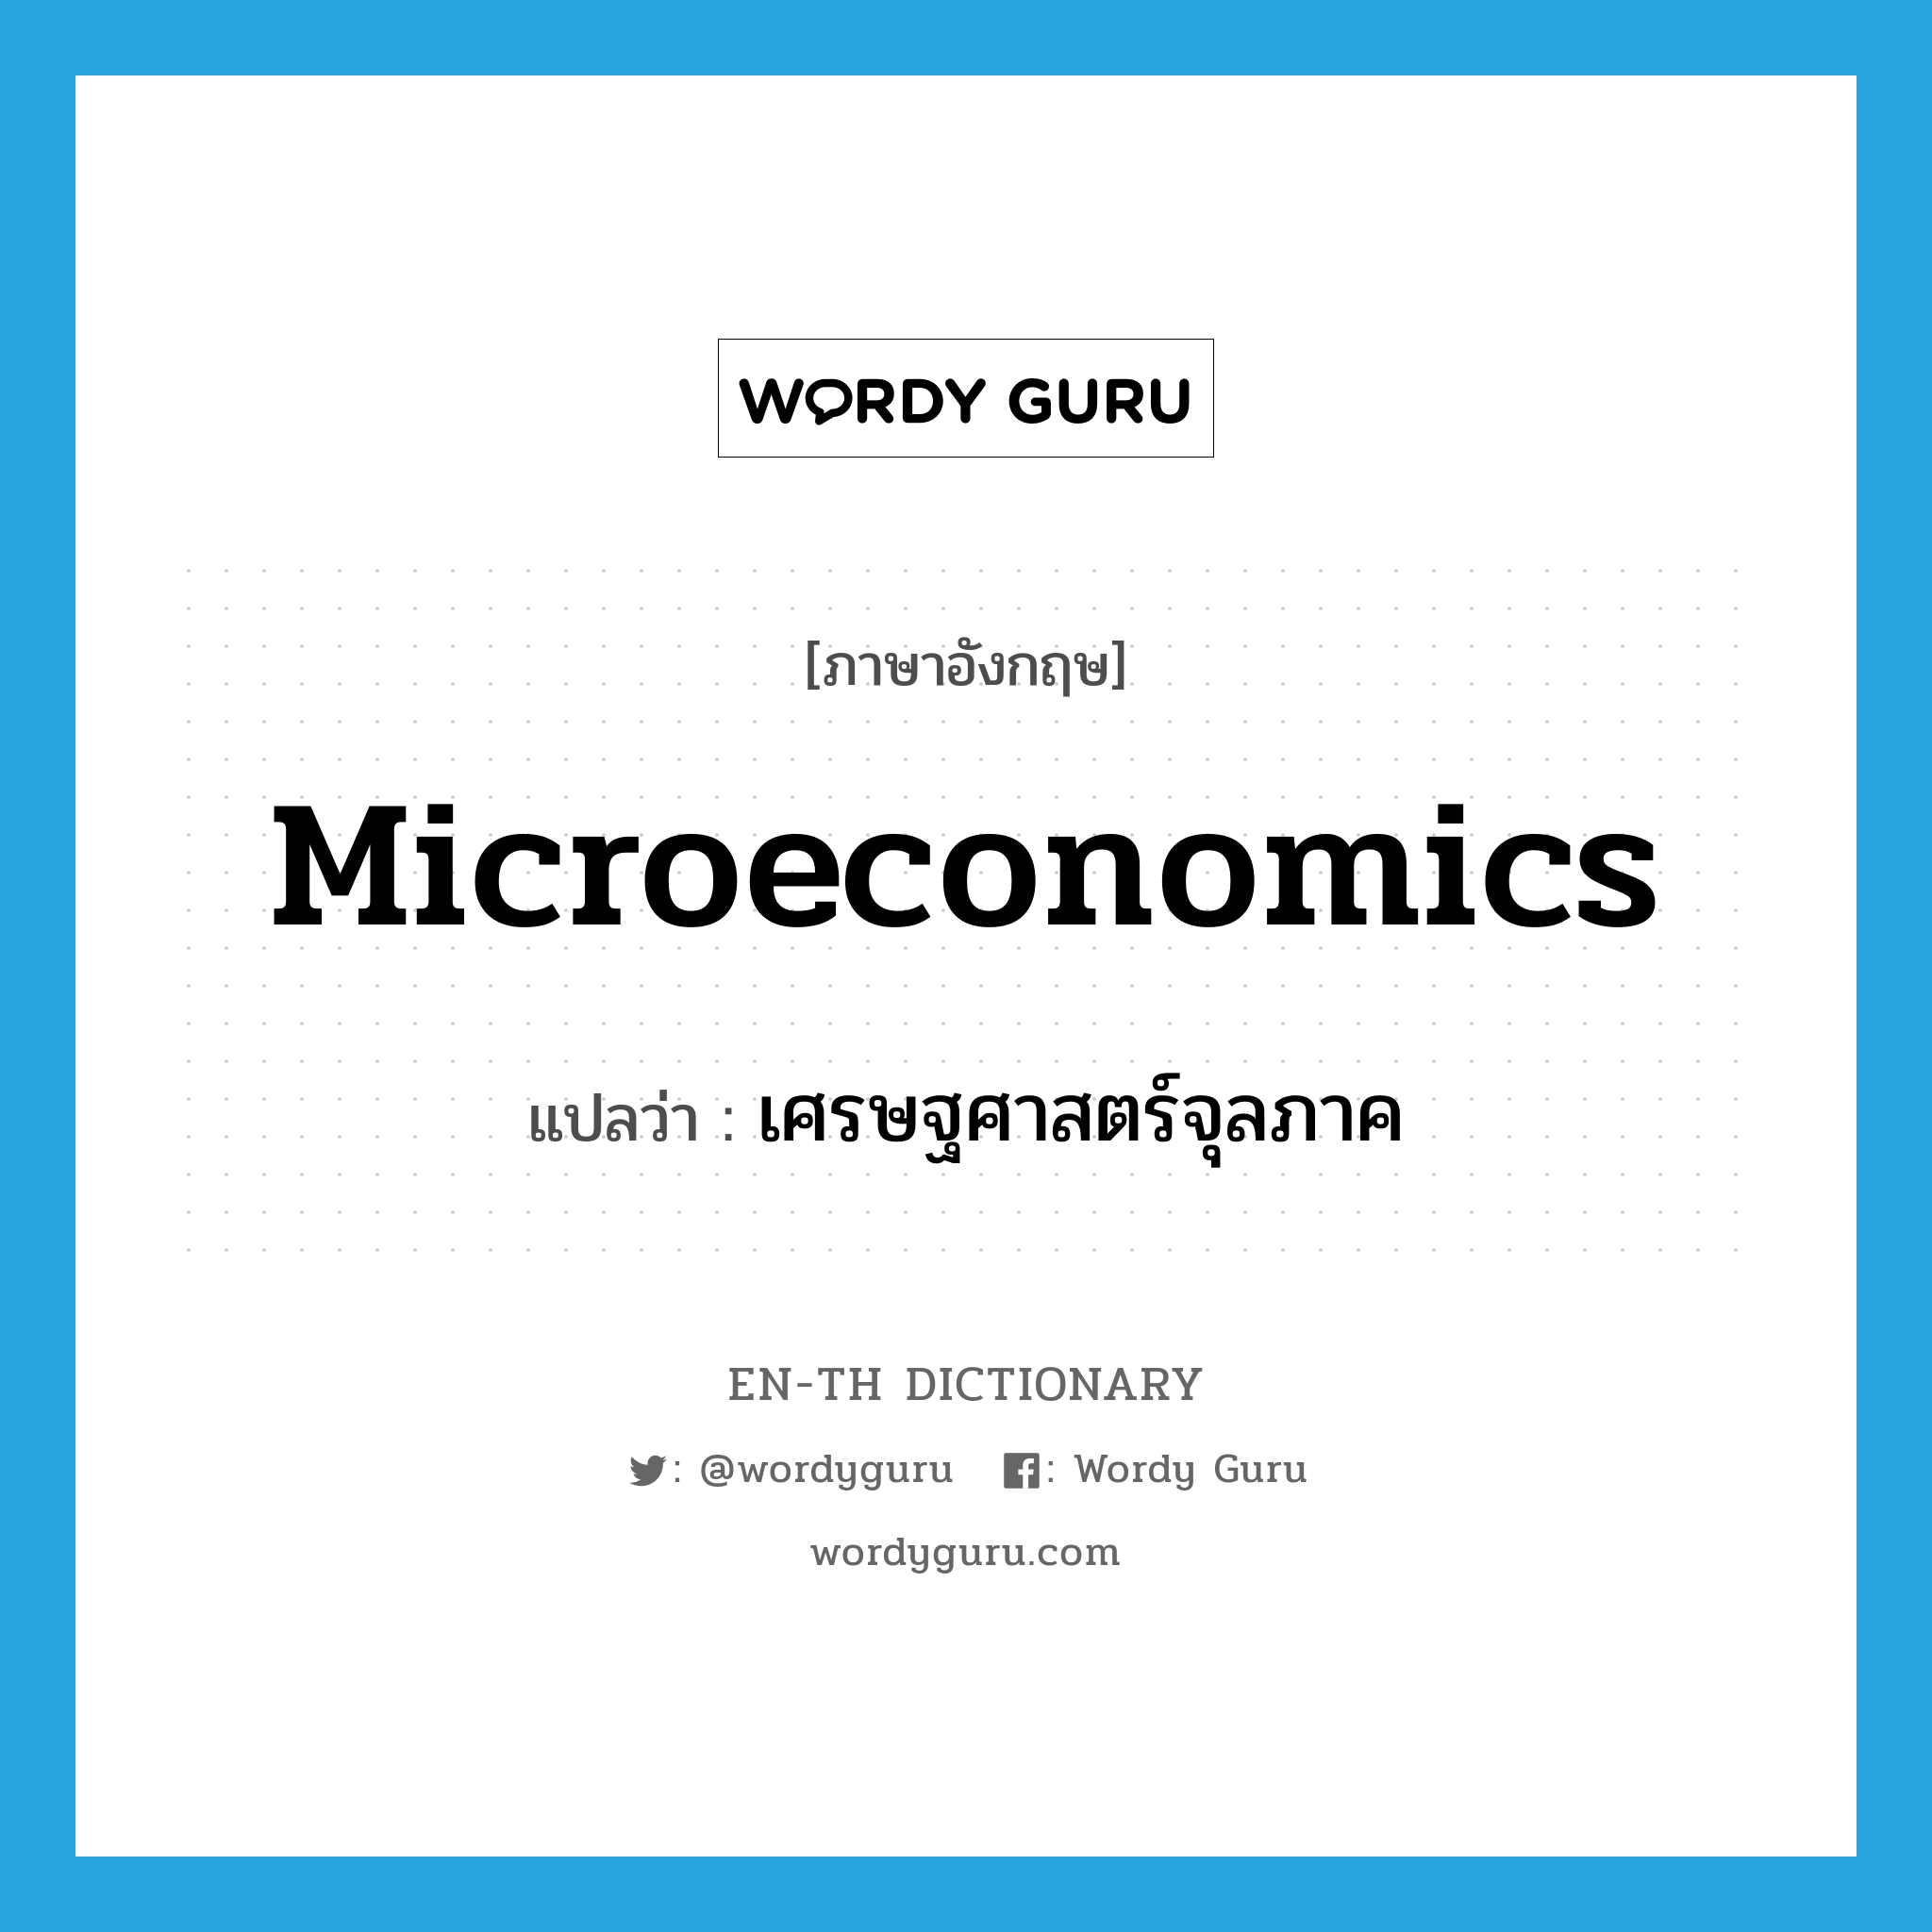 เศรษฐศาสตร์จุลภาค ภาษาอังกฤษ?, คำศัพท์ภาษาอังกฤษ เศรษฐศาสตร์จุลภาค แปลว่า microeconomics ประเภท N หมวด N